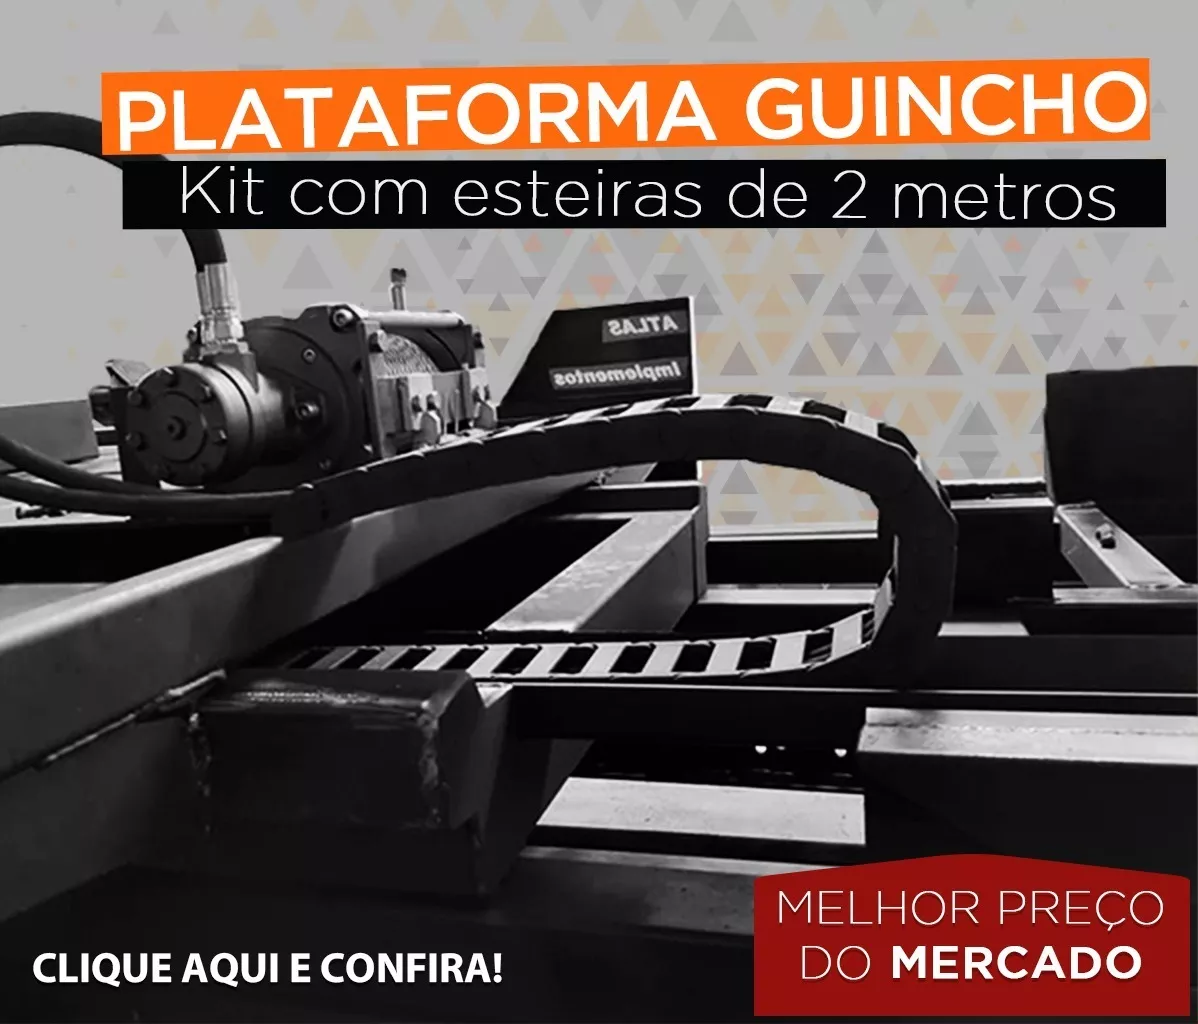 Esteira Para Plataforma Guincho - 2 Metros + Ponteiras